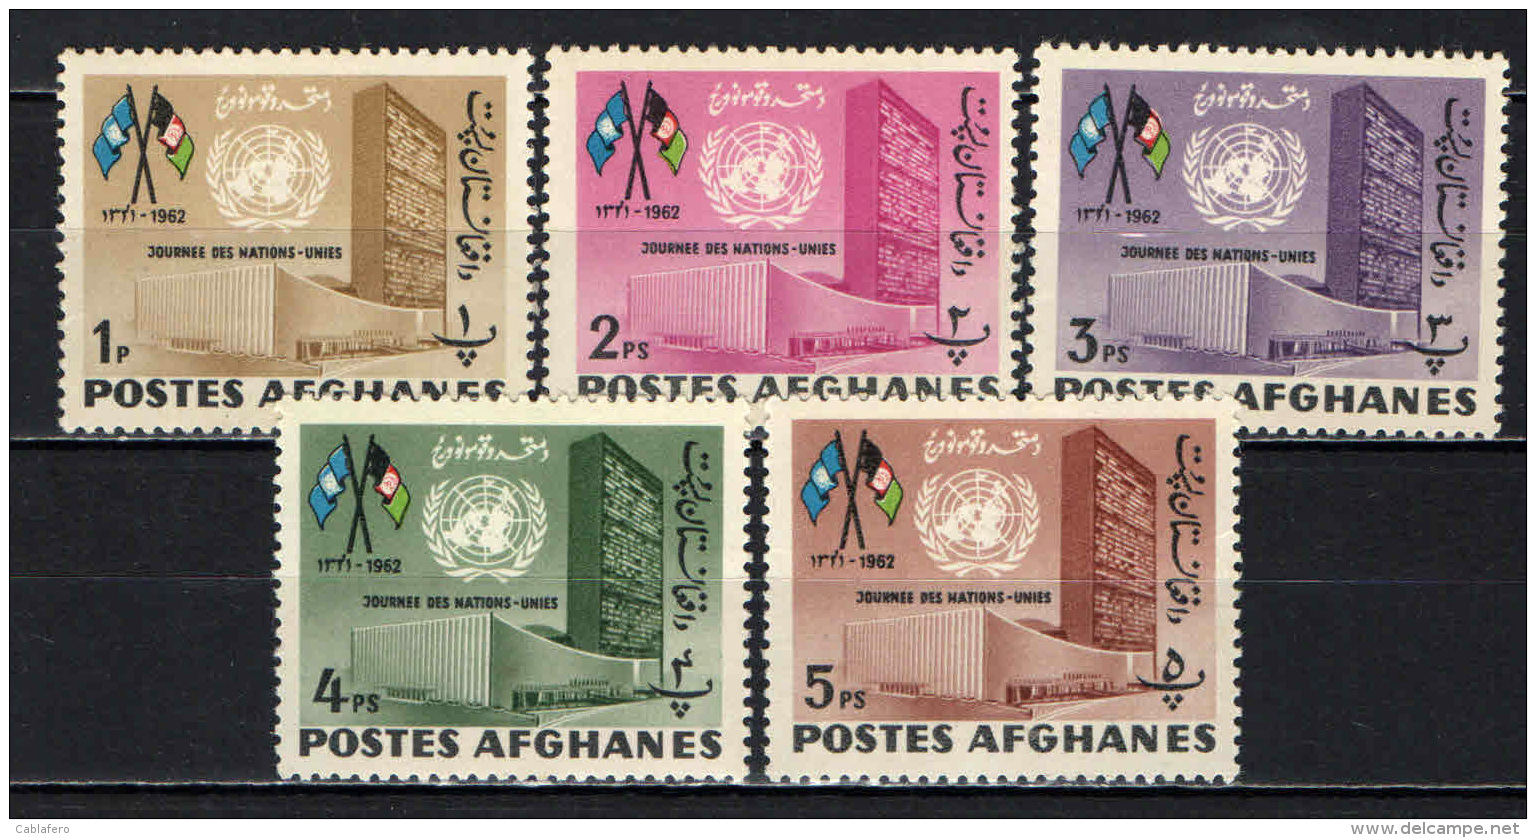 AFGHANISTAN - 1962 - GIORNATA DELLE NAZIONI UNITE - GOMMA MACCHIATA - MNH - Afganistán